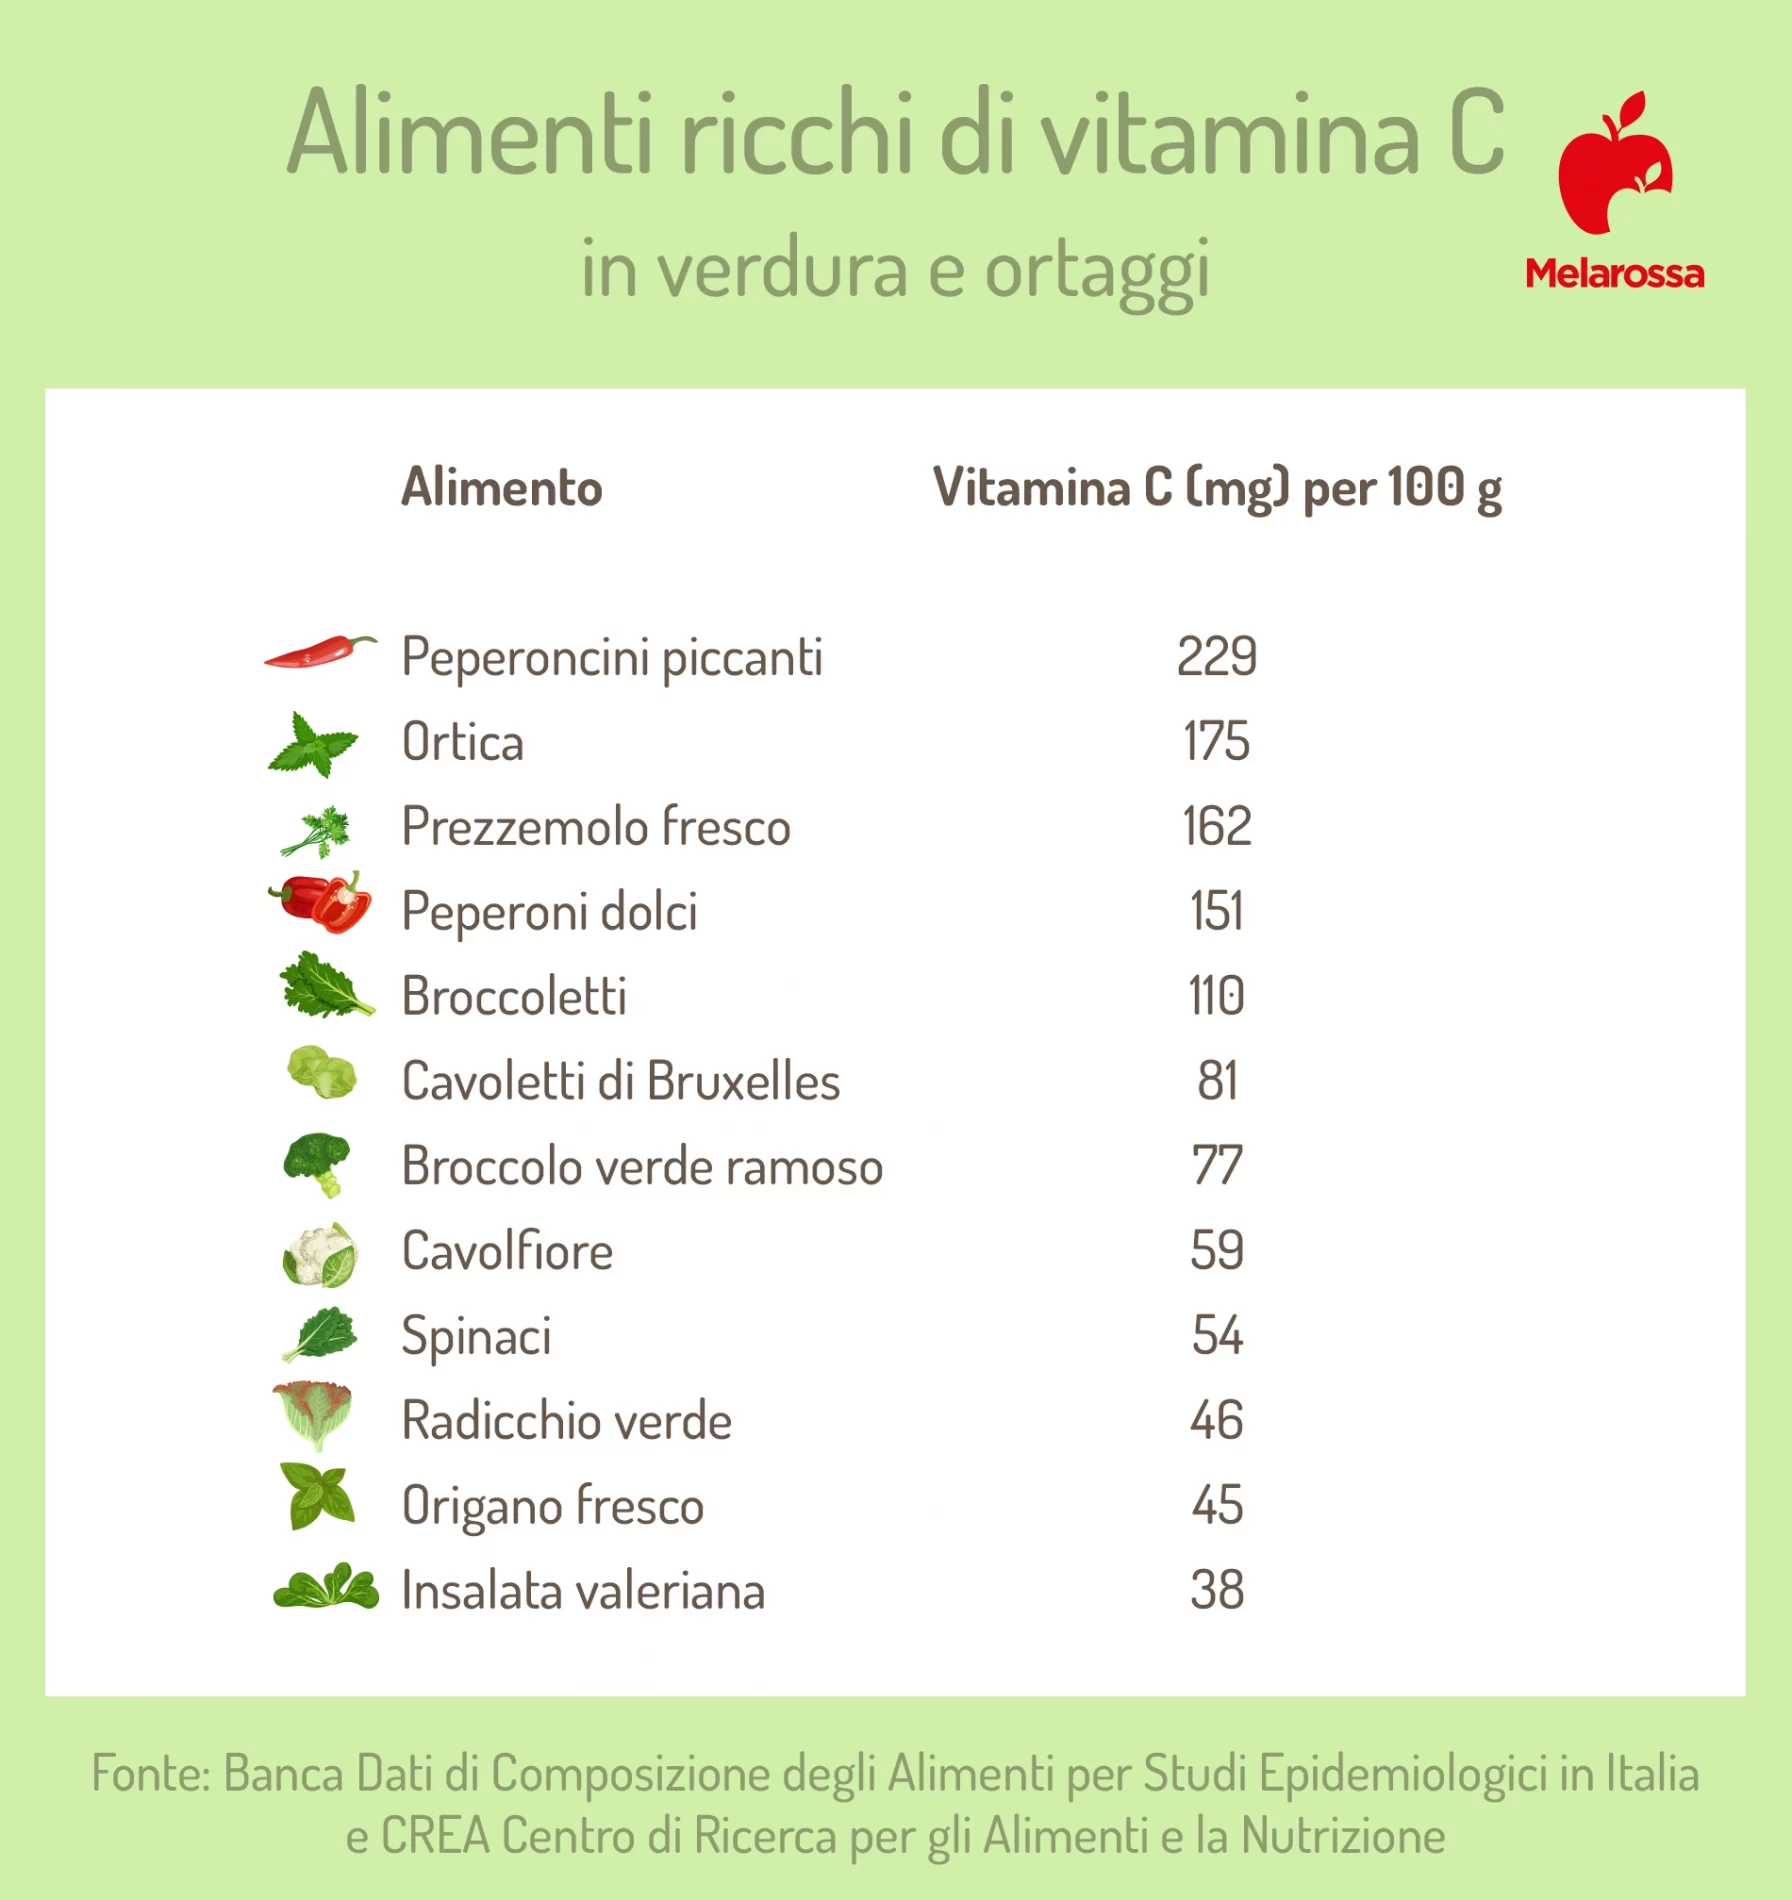 alimenti ricchi di vitamina C: verdura e ortaggi 